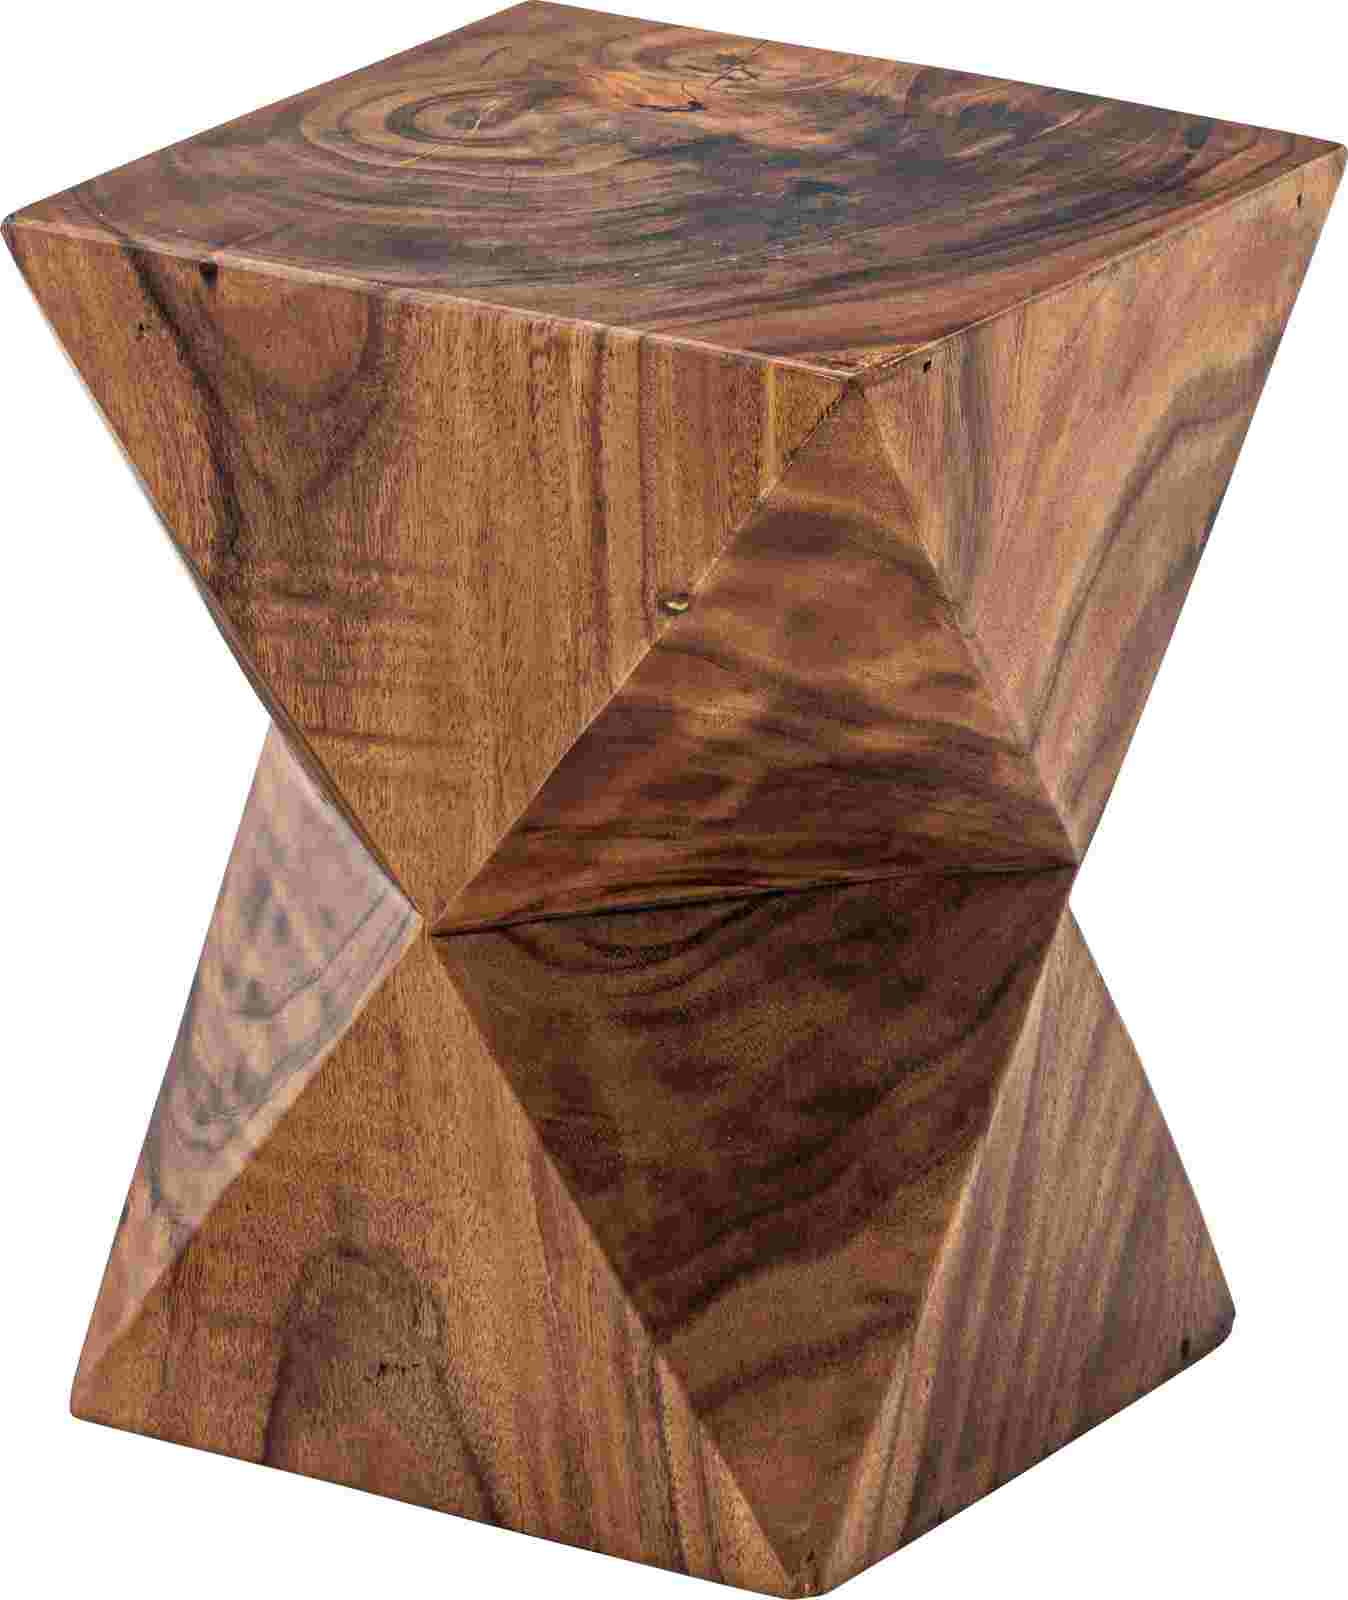 スツール 椅子 チェア ローチェア サイドテーブル 三角面 天然木 古材 北欧 モンキーポッド ウッド 小物置き 花台 フラワースタンド おしゃれ インテリア リビング 玄関